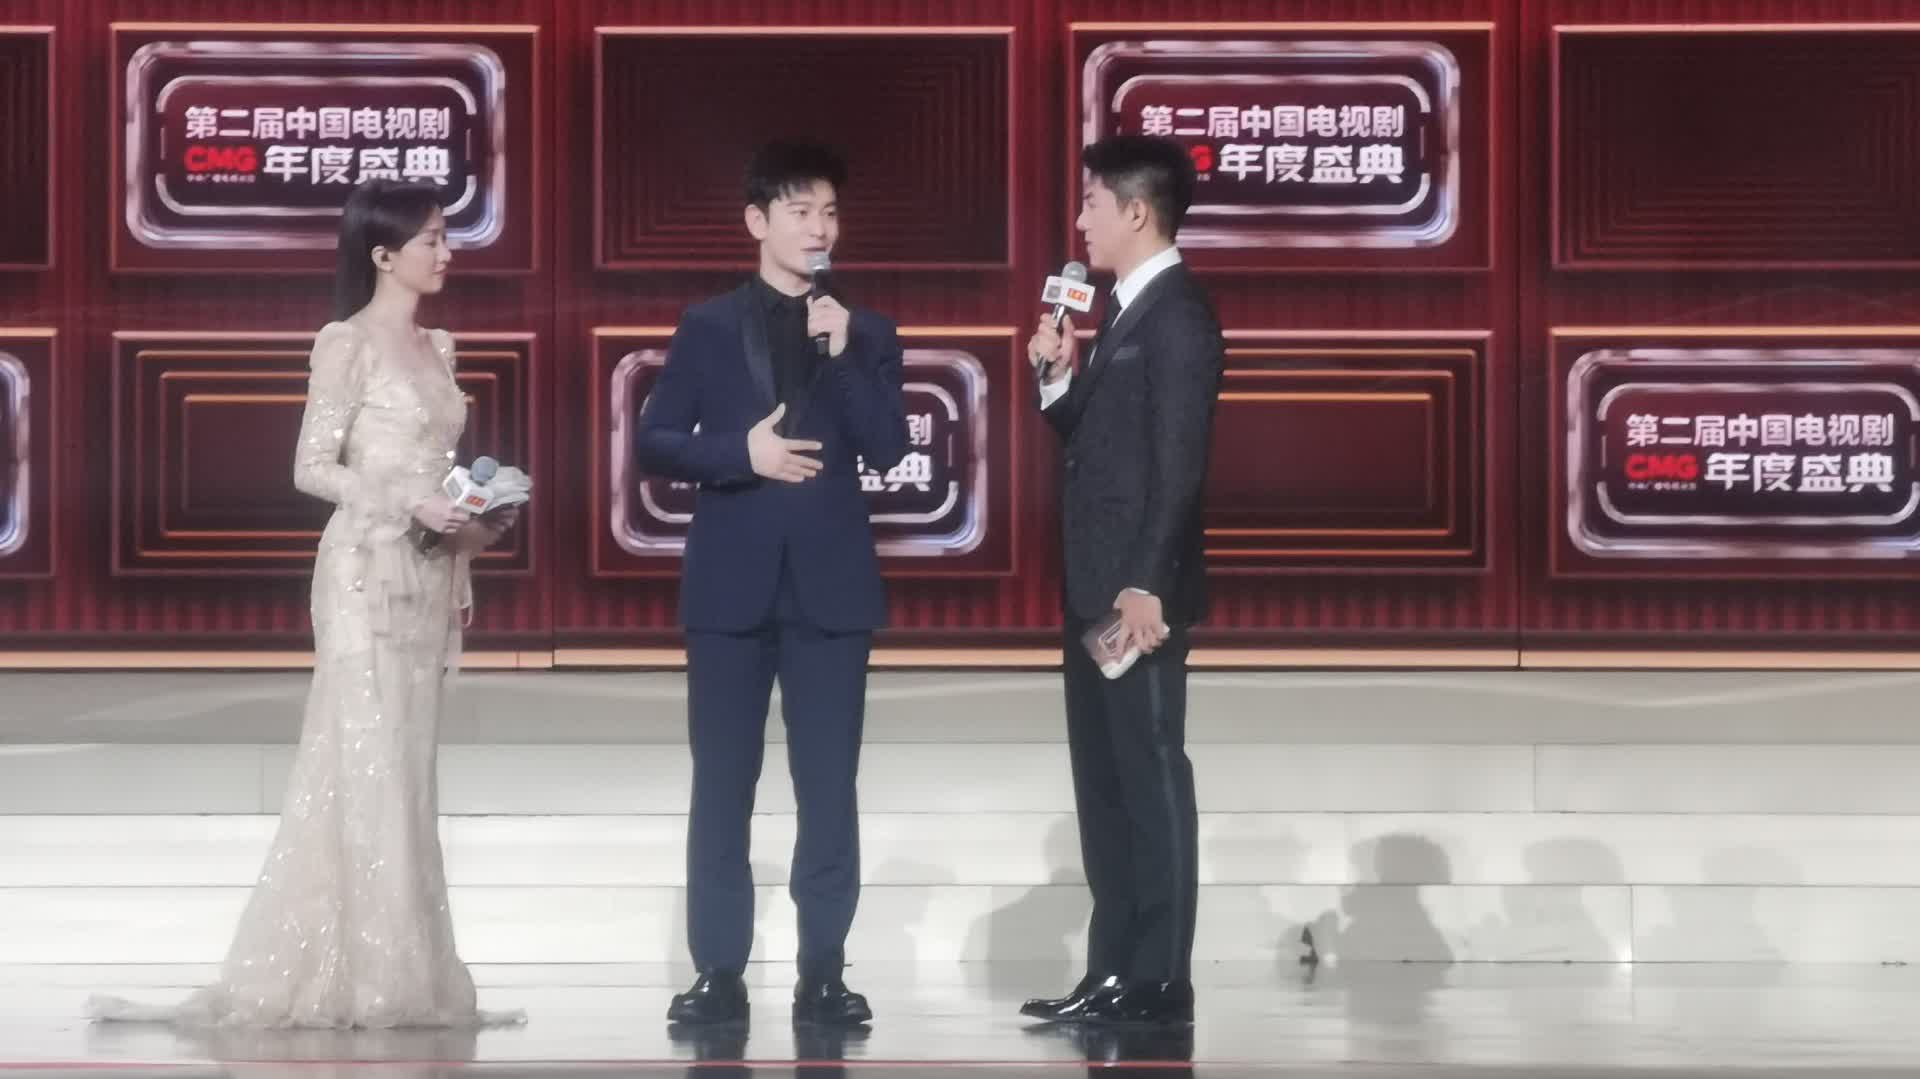 多圖直擊CMG第二屆中國電視劇年度盛典紅毯　《狂飆》《繁花》等主創參與互動